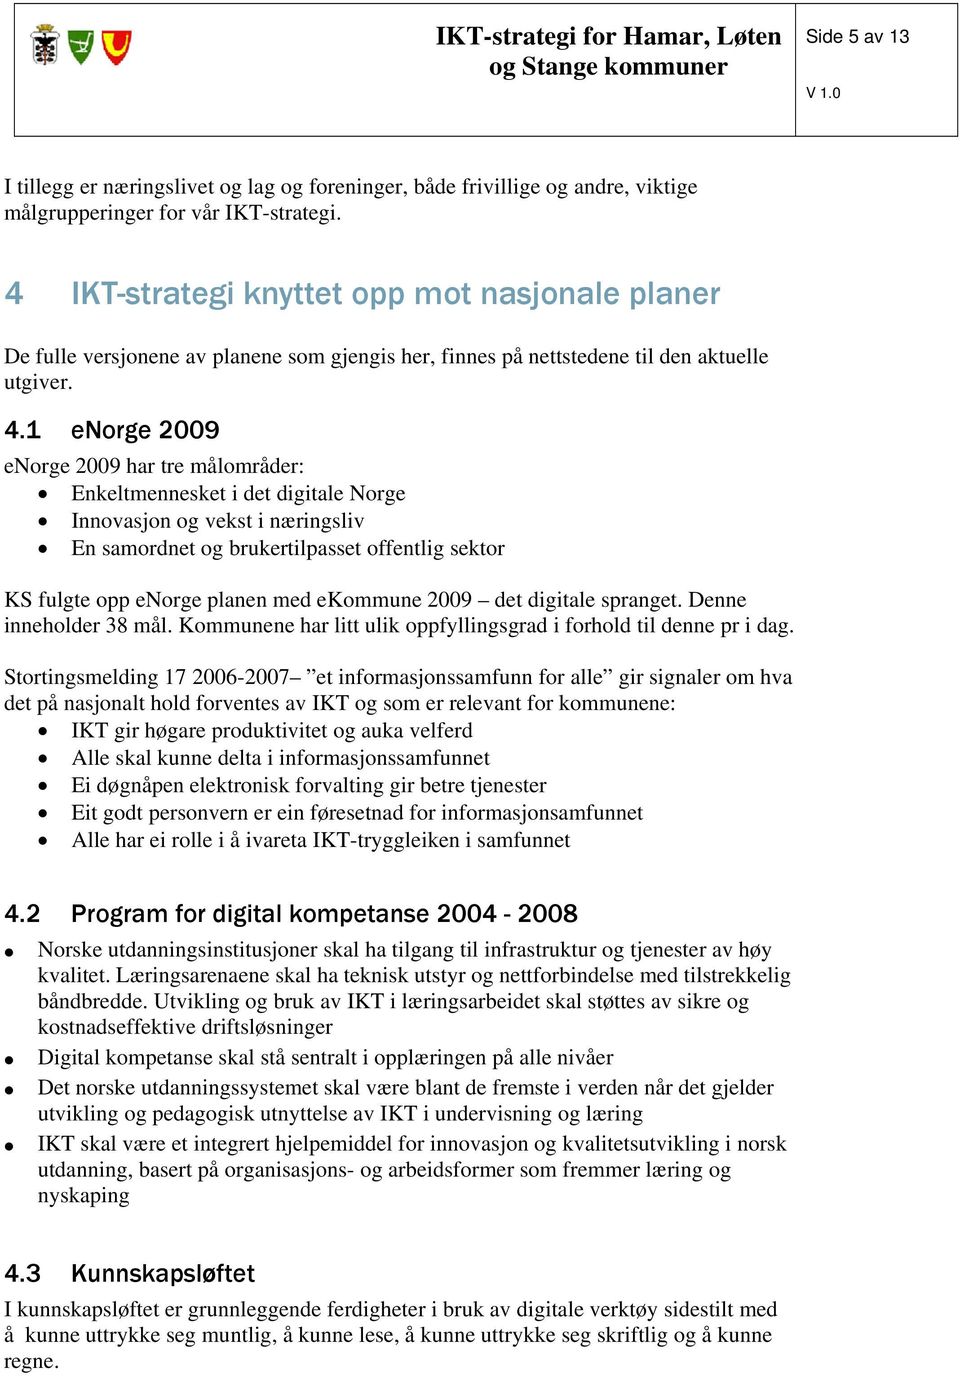 1 enorge 2009 enorge 2009 har tre målområder: Enkeltmennesket i det digitale Norge Innovasjon og vekst i næringsliv En samordnet og brukertilpasset offentlig sektor KS fulgte opp enorge planen med